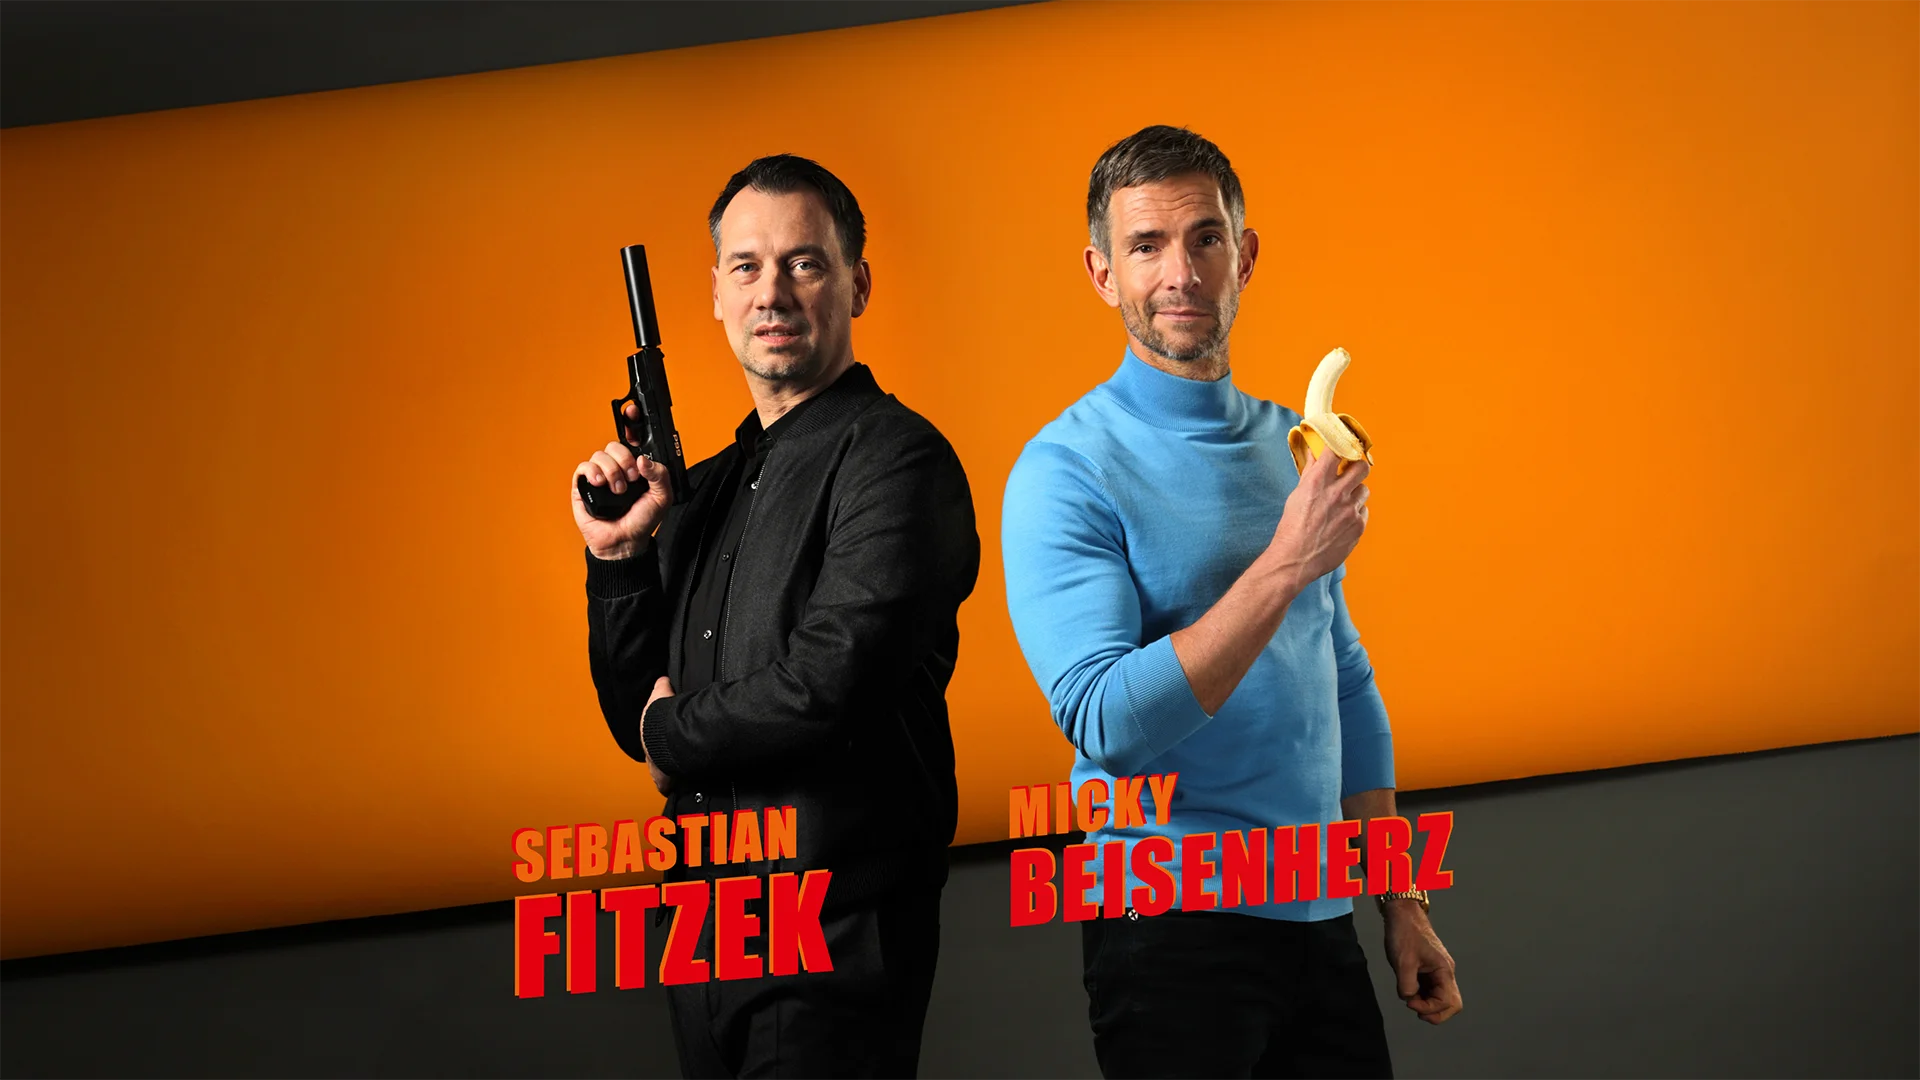 Ein Bild zeigt Sebatsian Fitzek und Micky Beisenherz als Cover für das Buch "Schreib oder Stirb - Der Buchraub."